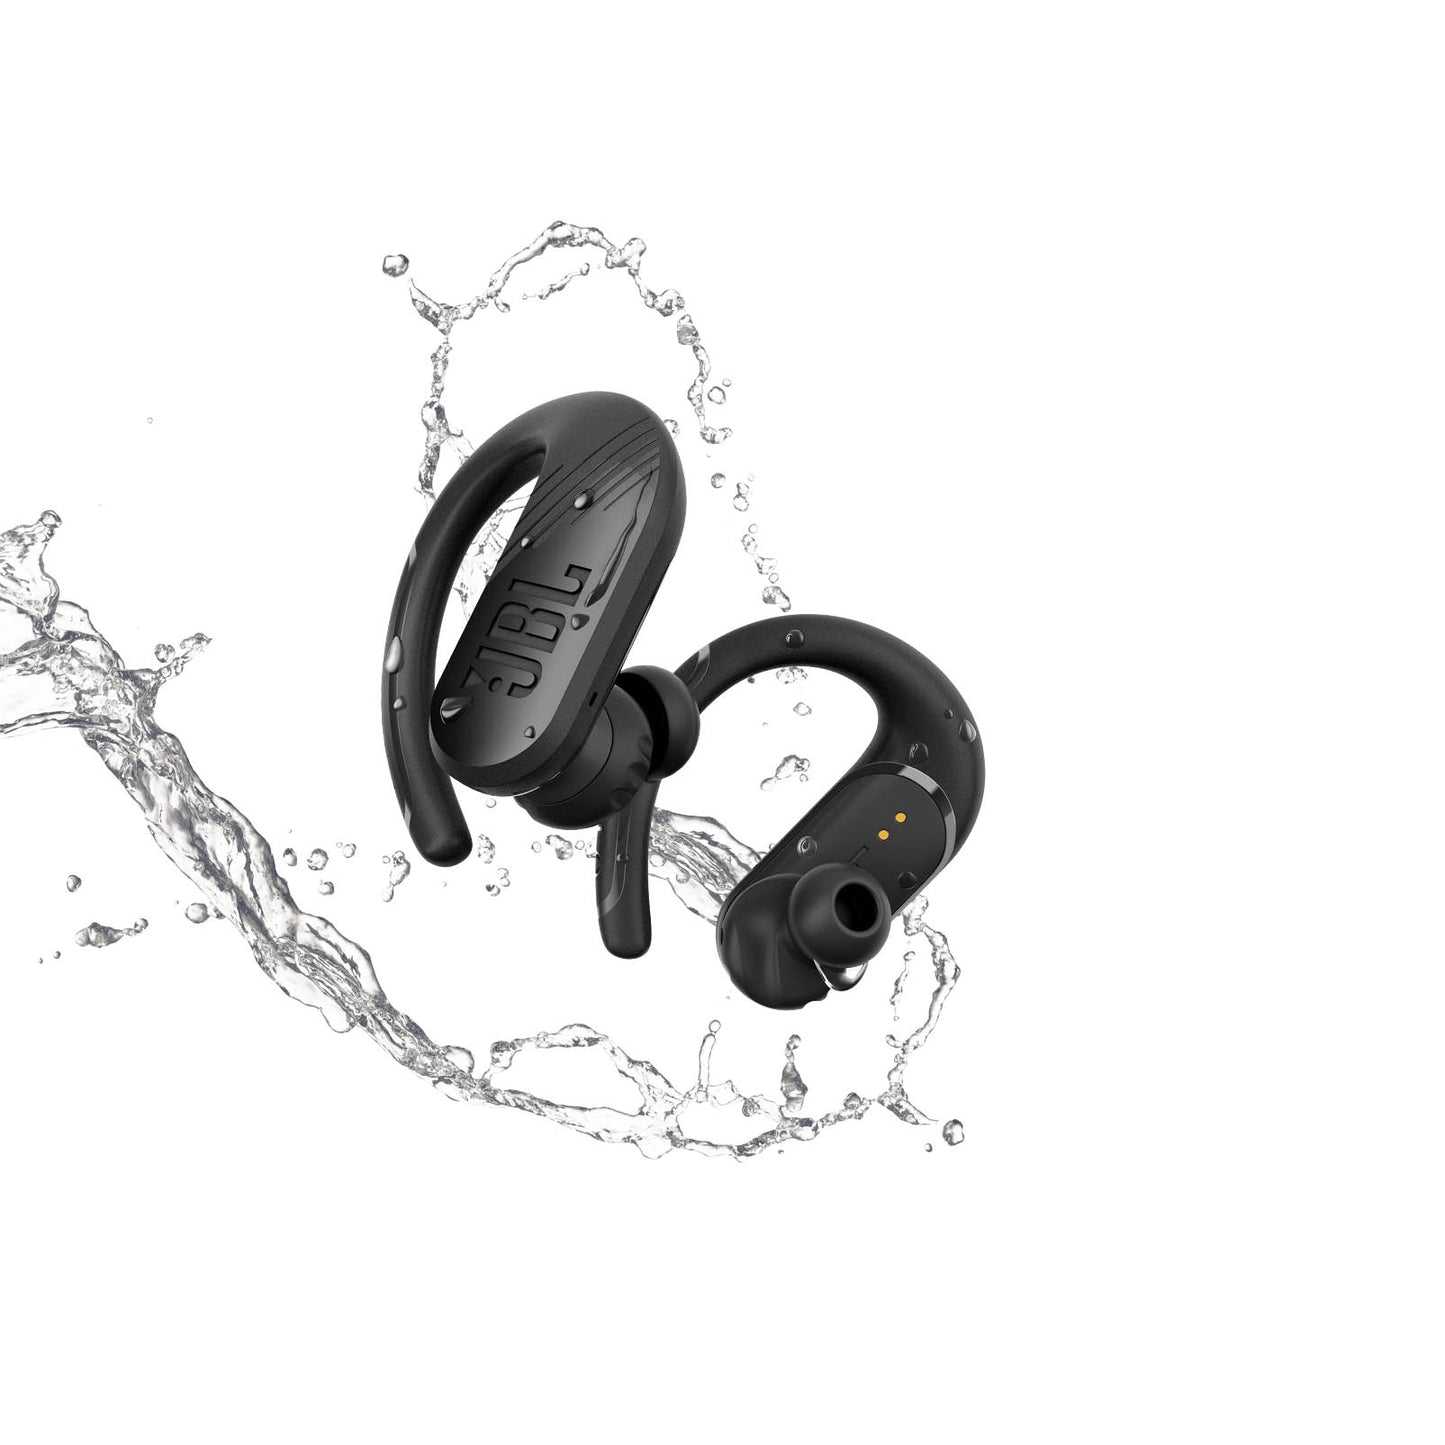 JBL Endurance Peak II True Wireless In-Ear Sport Headphones - Black